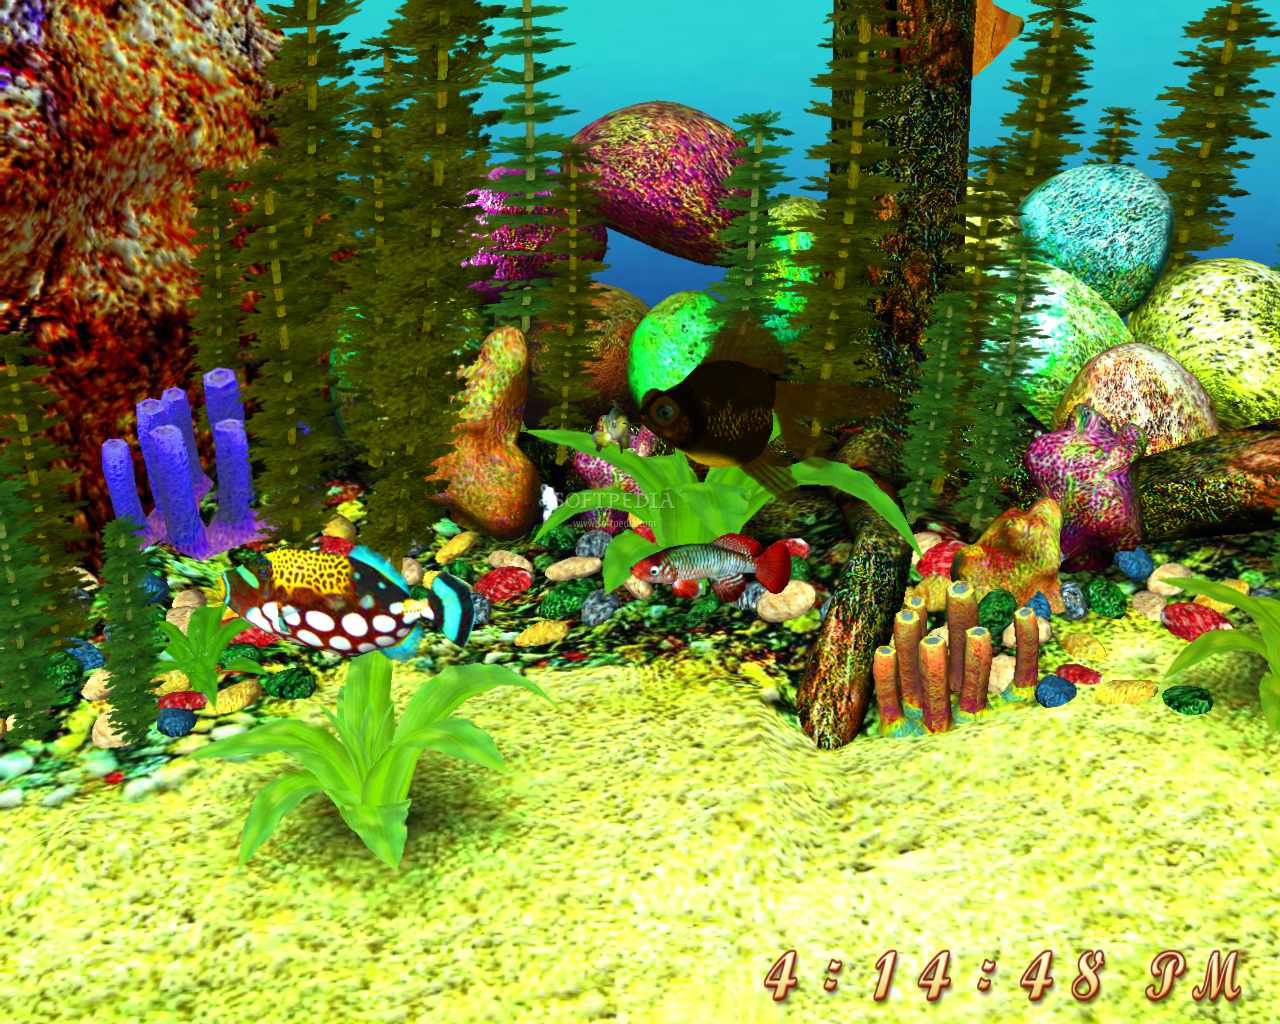 Để có một bầu không khí trong lành và thư giãn, bạn hãy cài đặt Màn hình nền Đại dương 3D. Bạn sẽ được chiêm ngưỡng các loài cá đang bơi lội trong những bãi san hô đẹp như tranh vẽ. Điều thú vị là các hình ảnh này sẽ thay đổi theo thời gian, cho bạn cảm giác như đang ngắm bể cá đúng như thật.